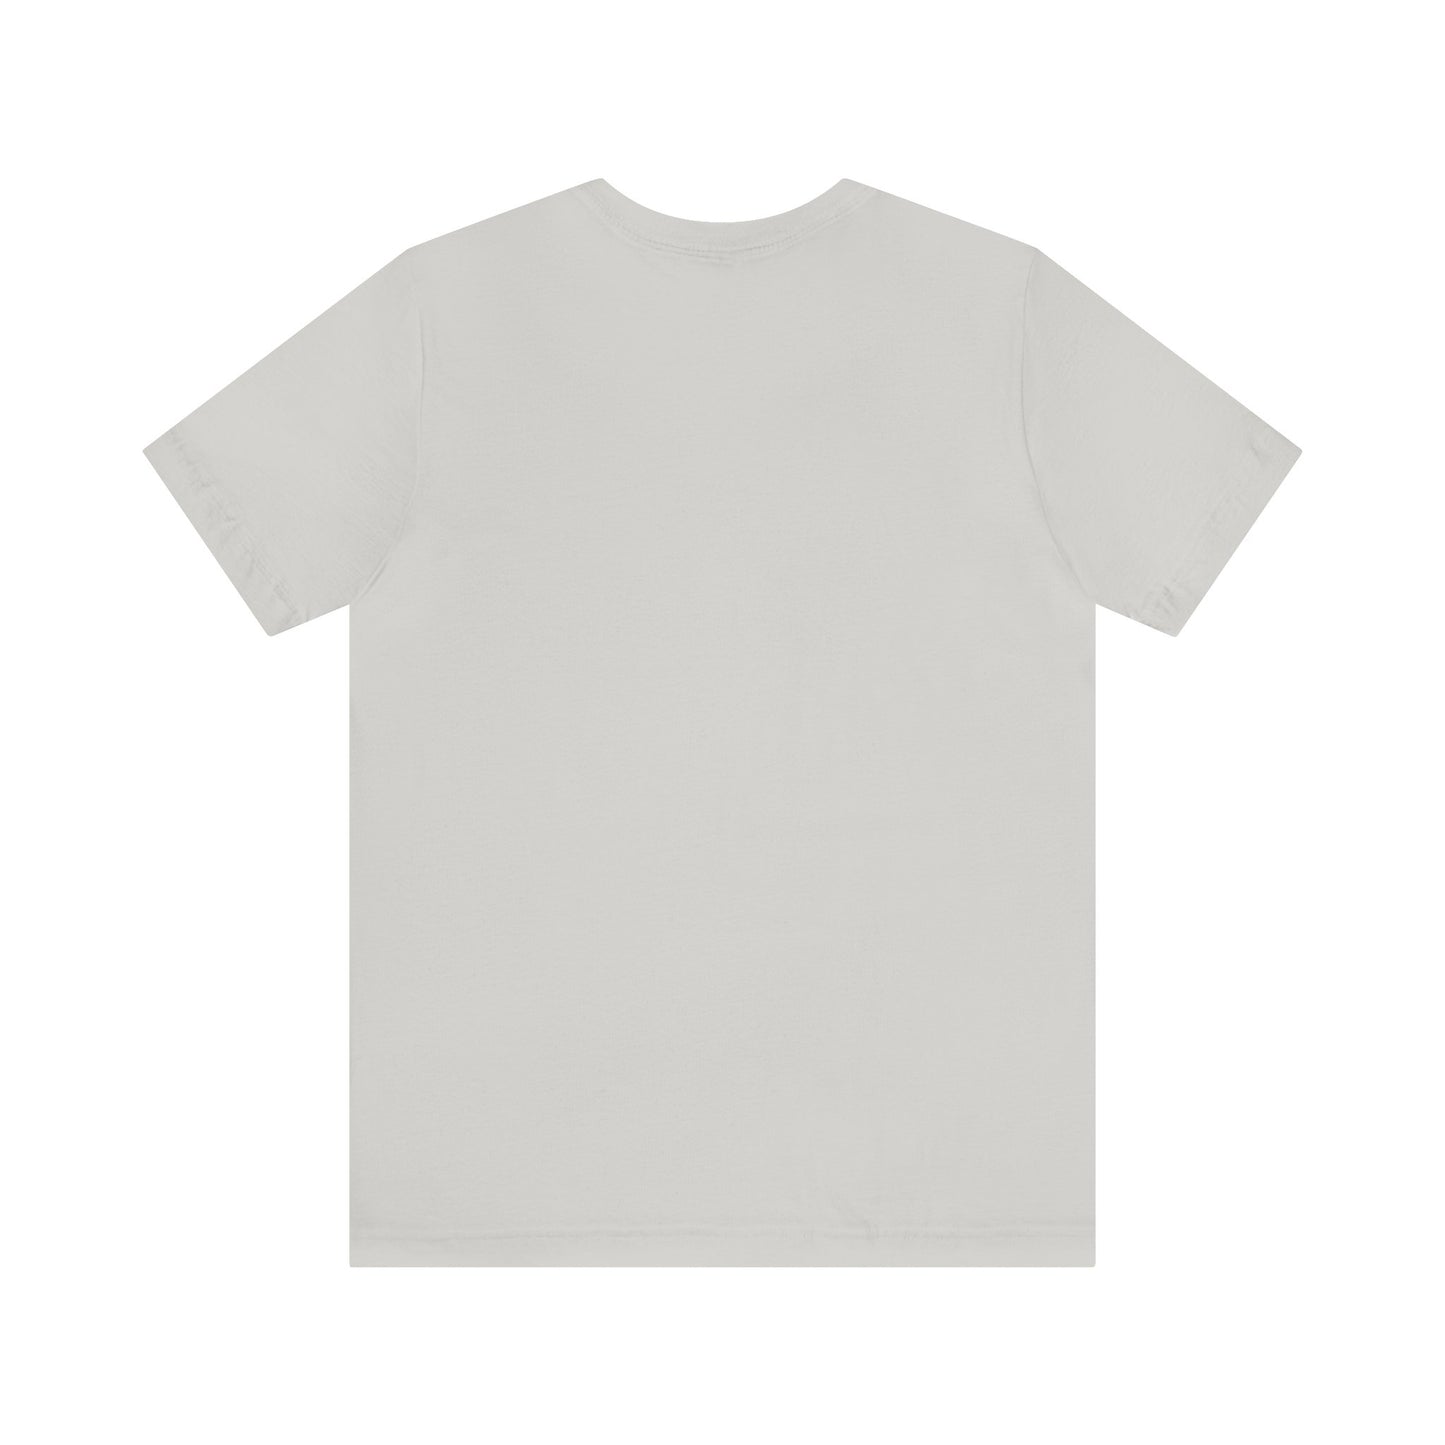 Unisex T-shirt Lana Del Rey